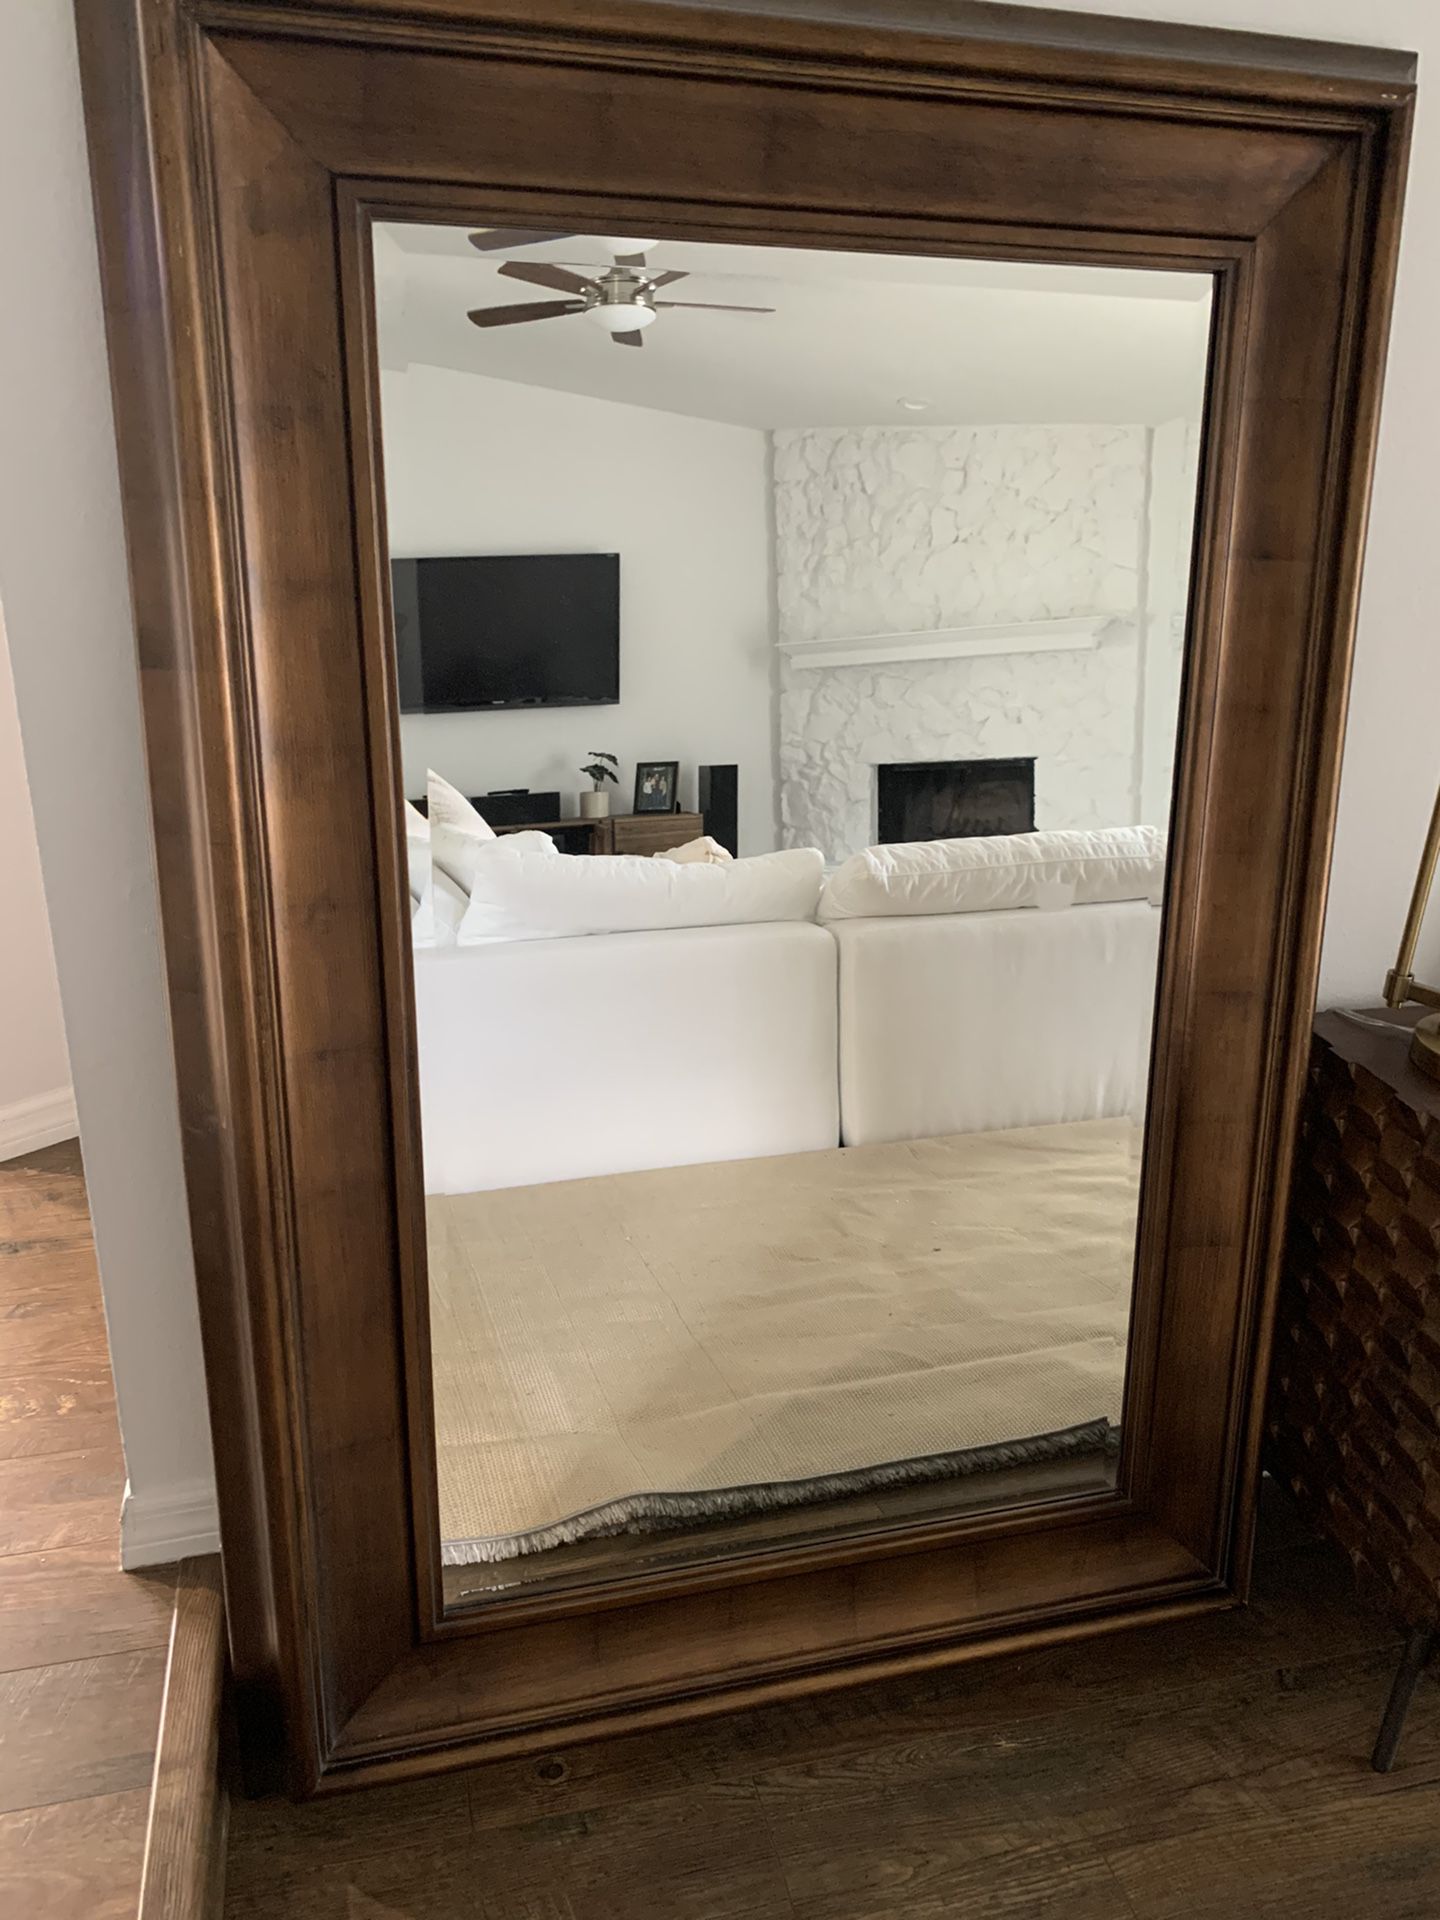 Floor or wall mirror